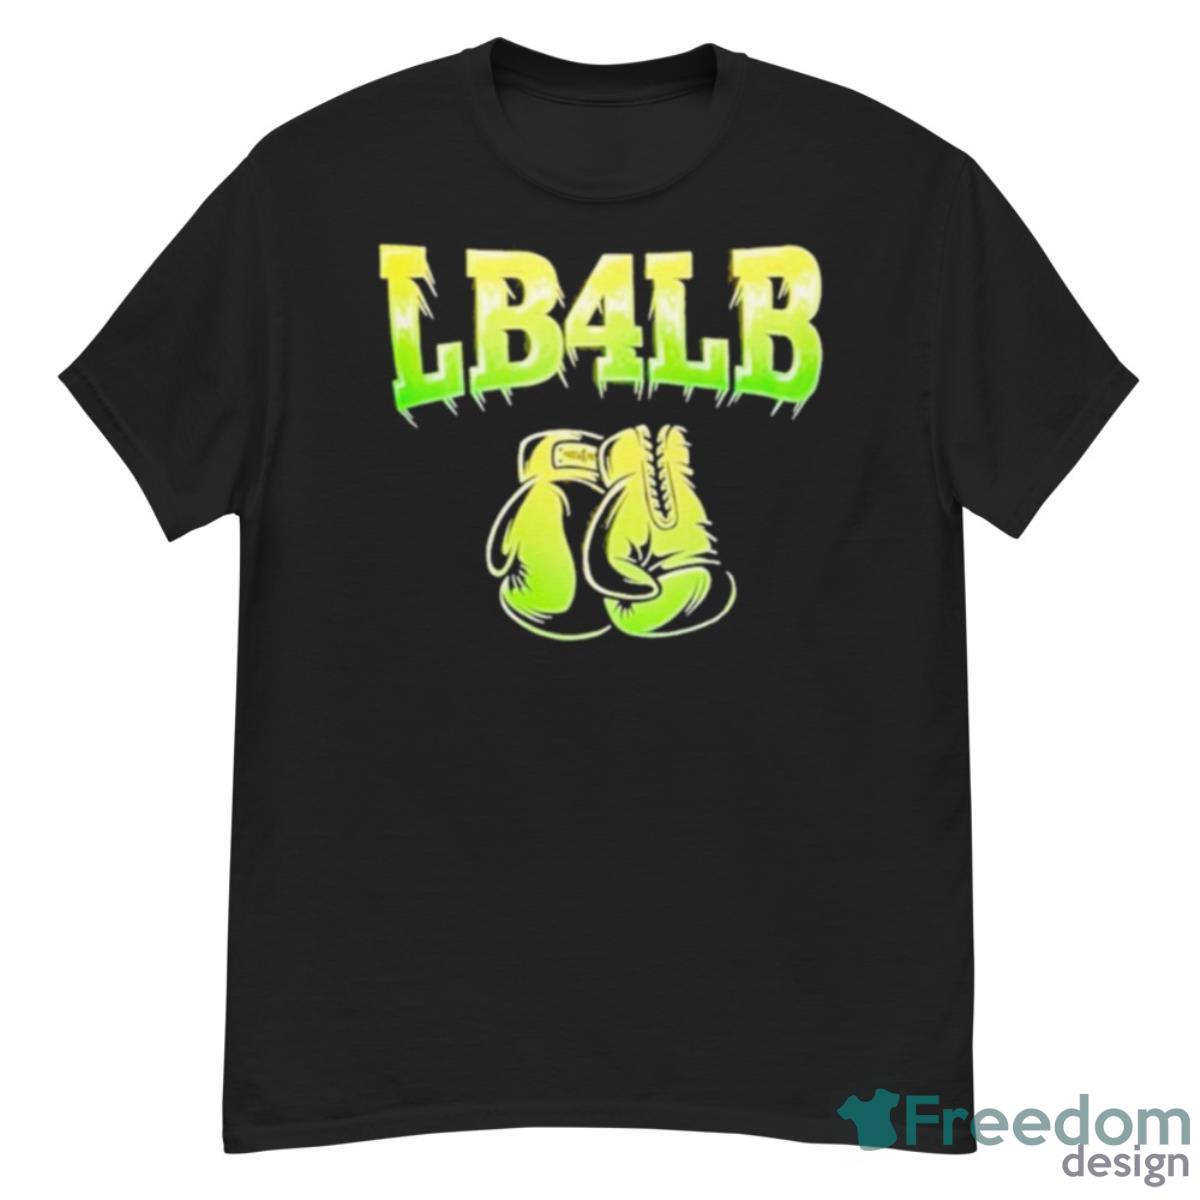 Lb4lb Shirt - G500 Men’s Classic T-Shirt